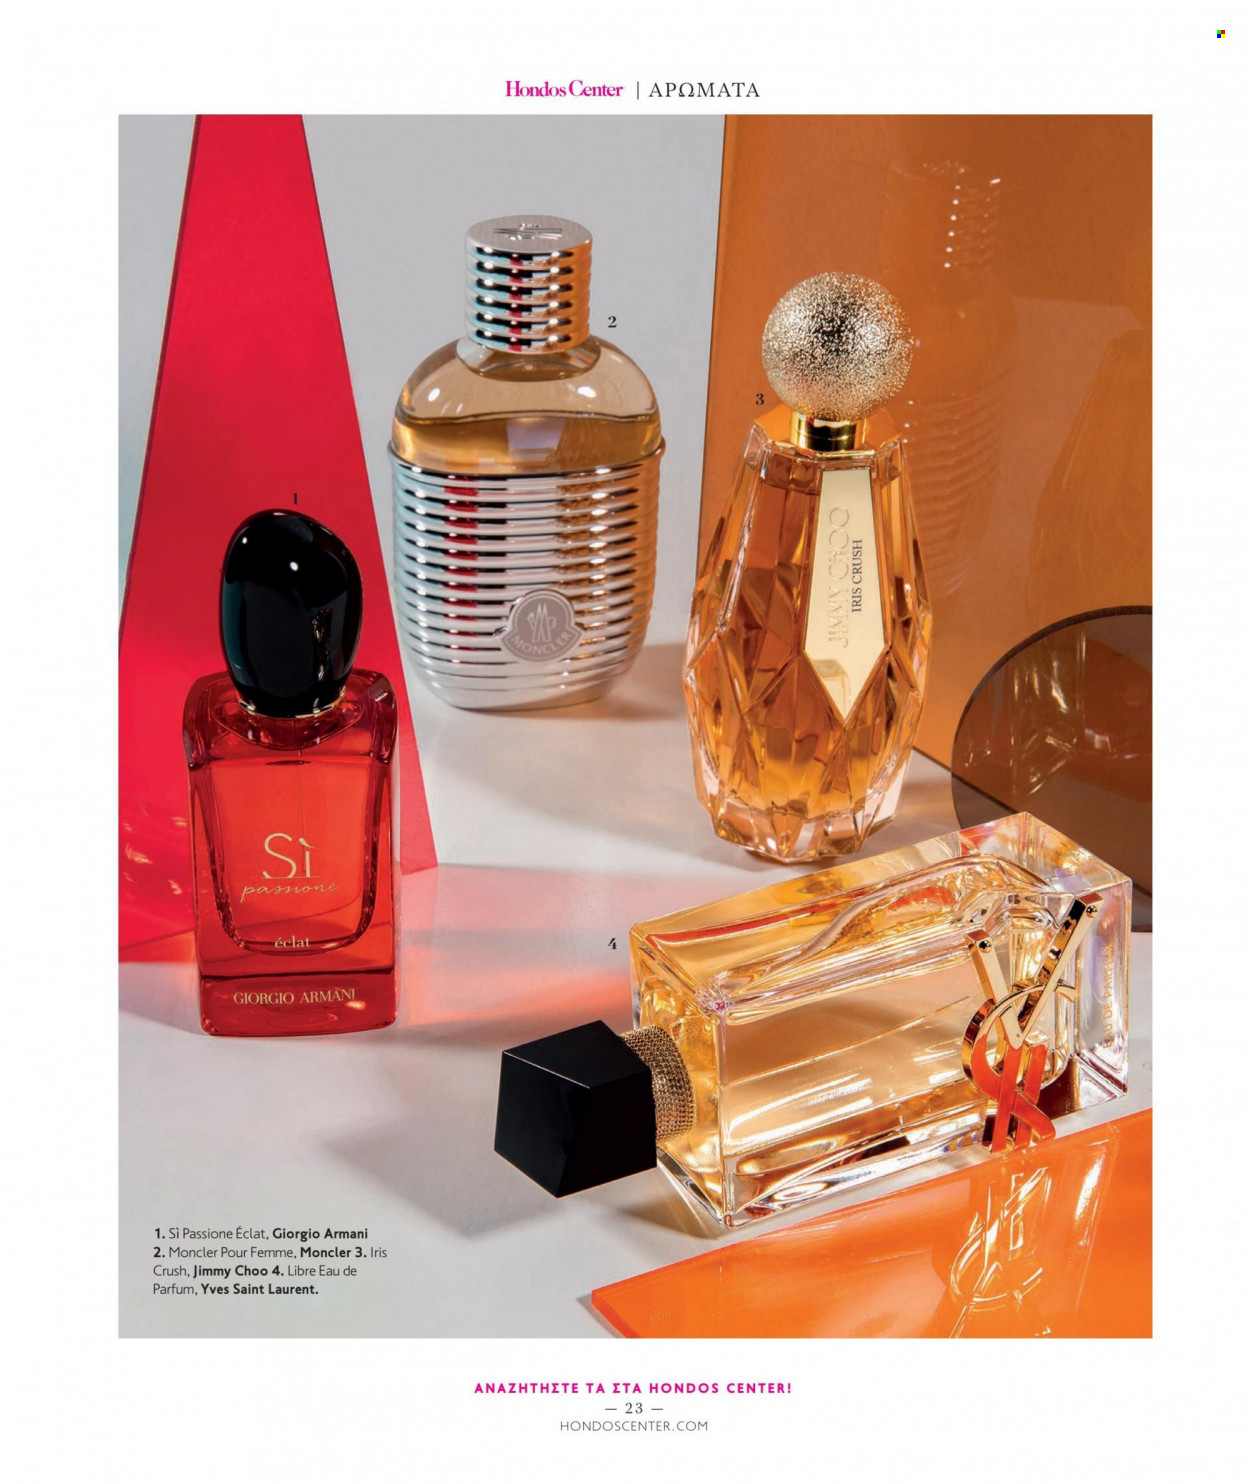 Φυλλάδια Hondos Center - Εκπτωτικά προϊόντα - eau de parfum, Giorgio Armani, Jimmy Choo. Σελίδα 23.